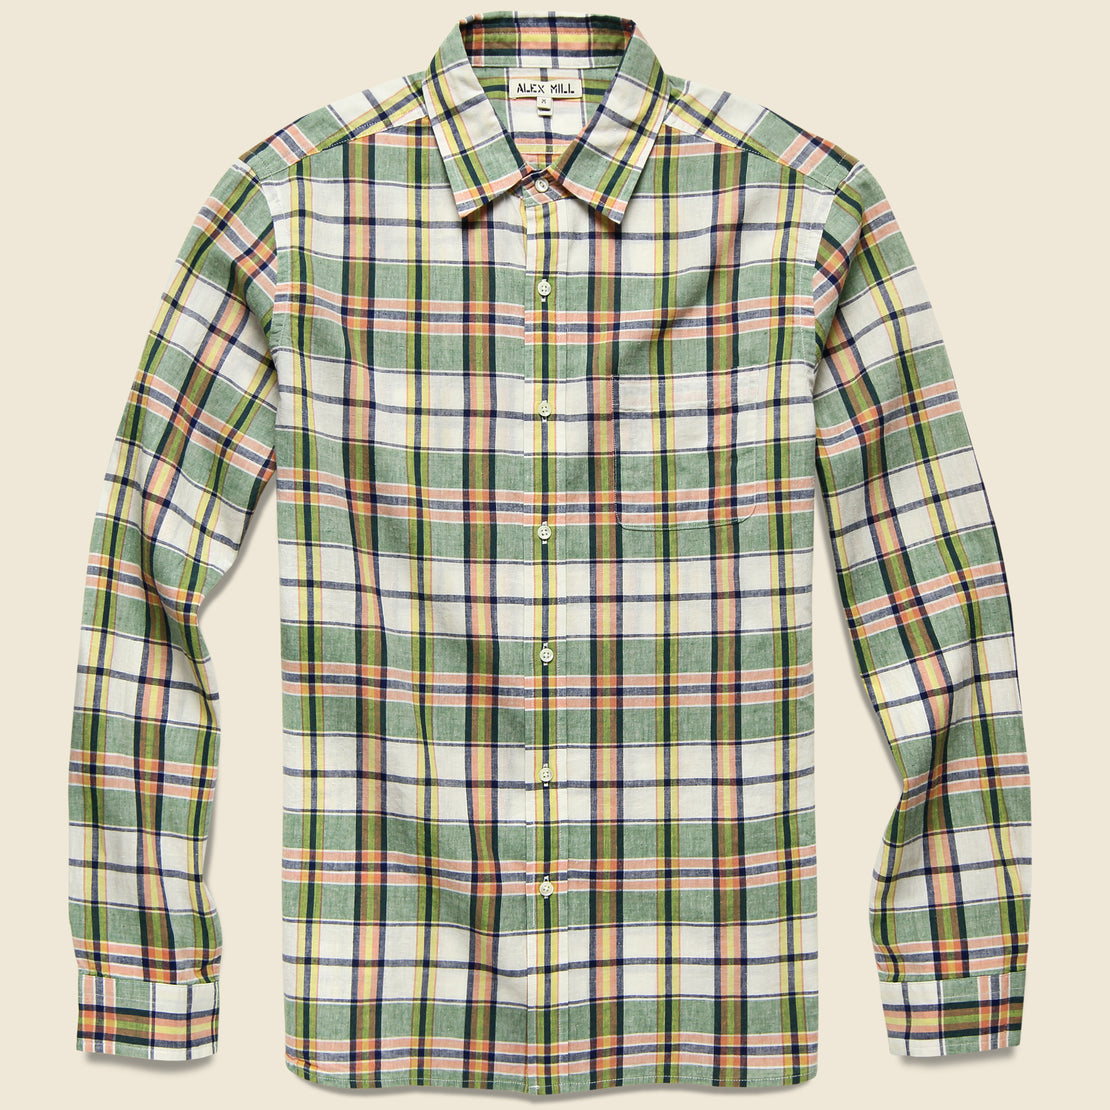 Alex Mill Alex Mill - L/S Cotton/Linen Spring Shirt, SS19